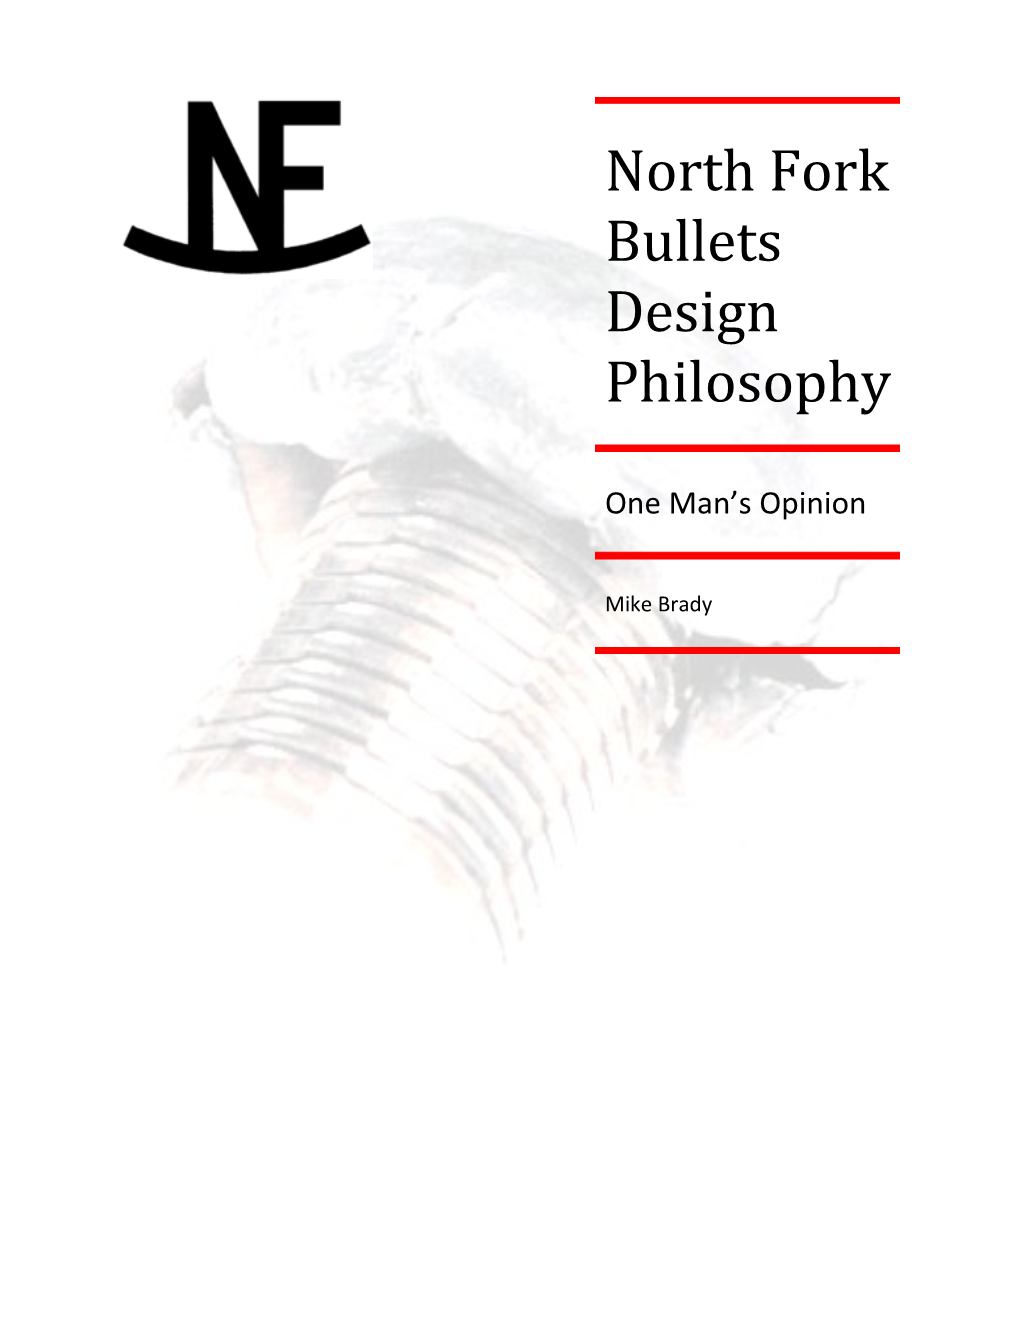 North Fork Bullets Design Philosophy